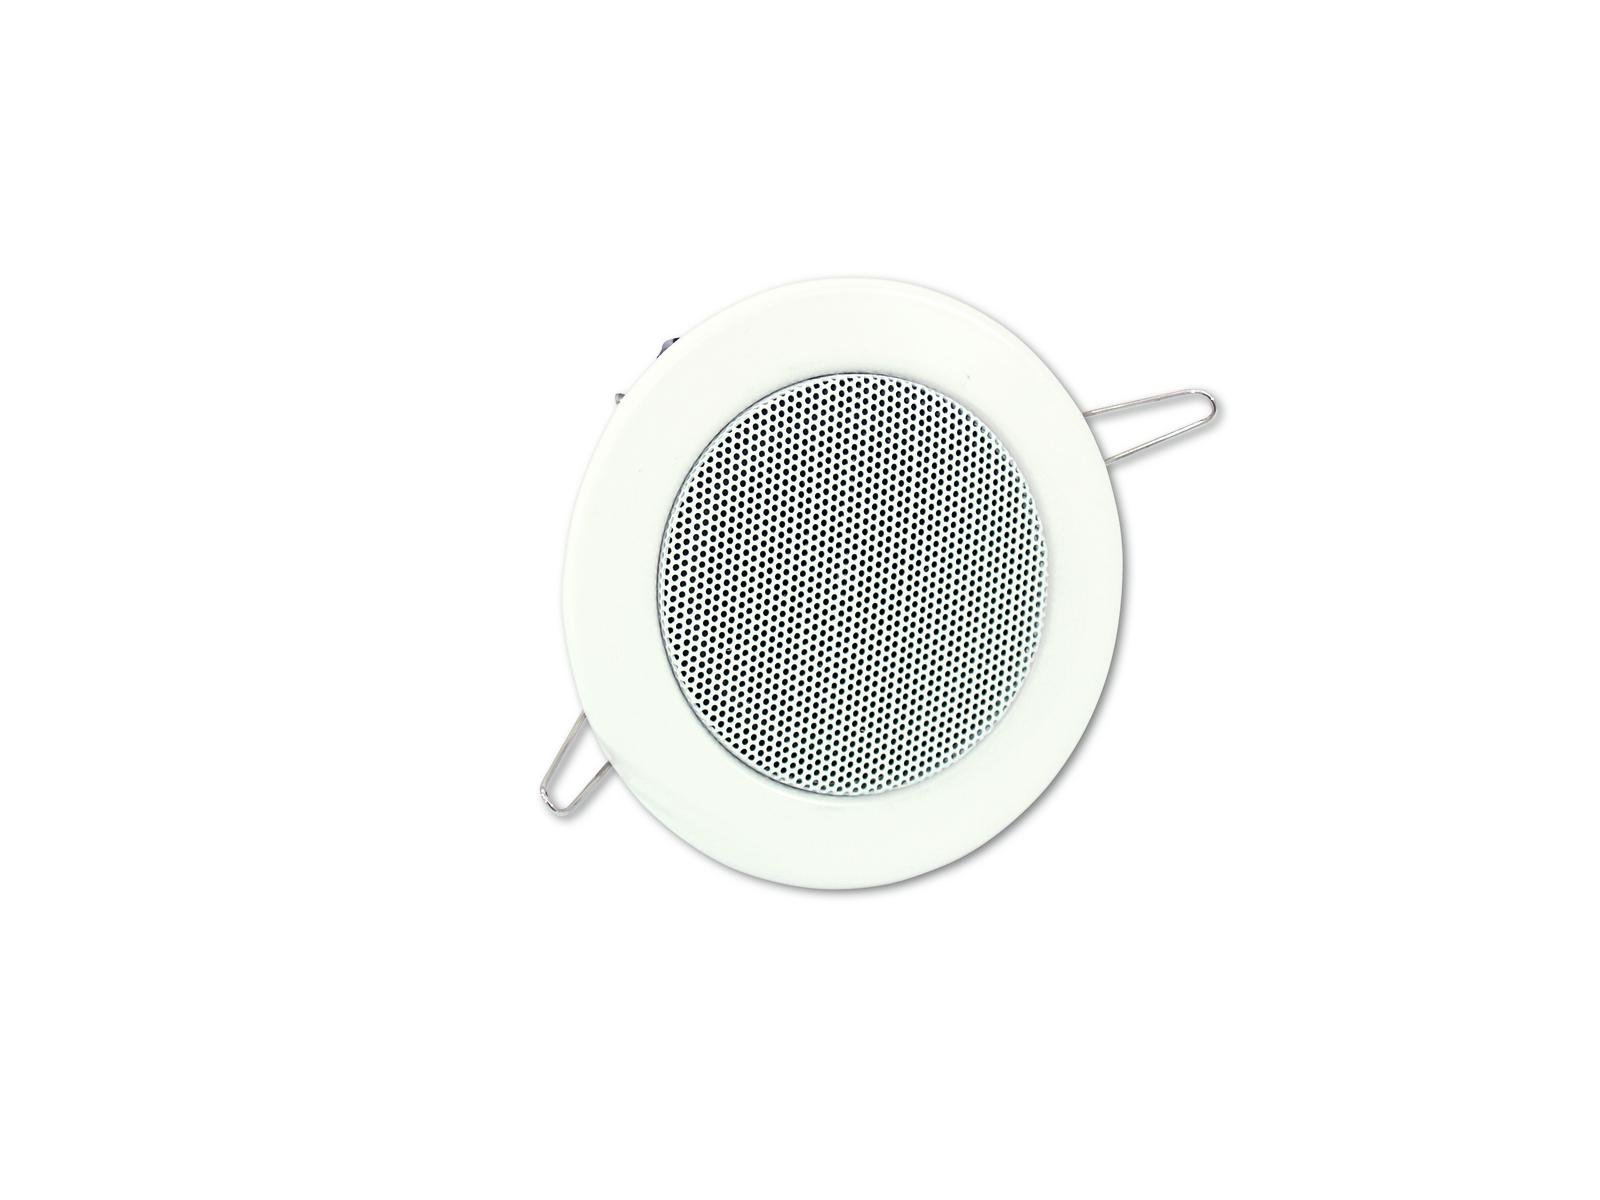 OMNITRONIC CS-2.5W Ceiling Speaker white